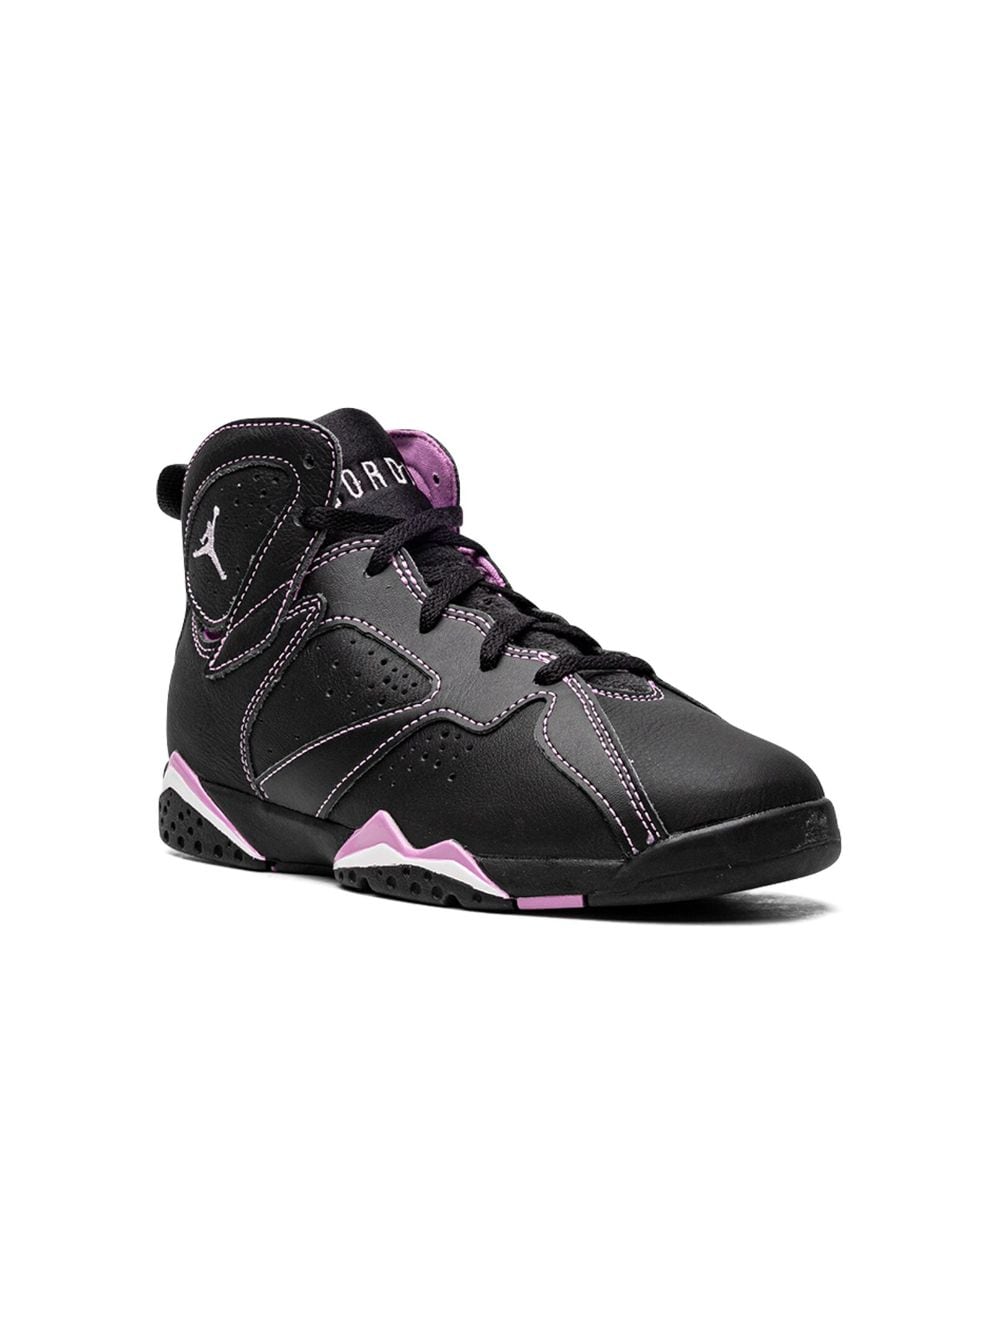 Jordan Kids Air Jordan 7 Retro "Barely Grape" sneakers - Black von Jordan Kids